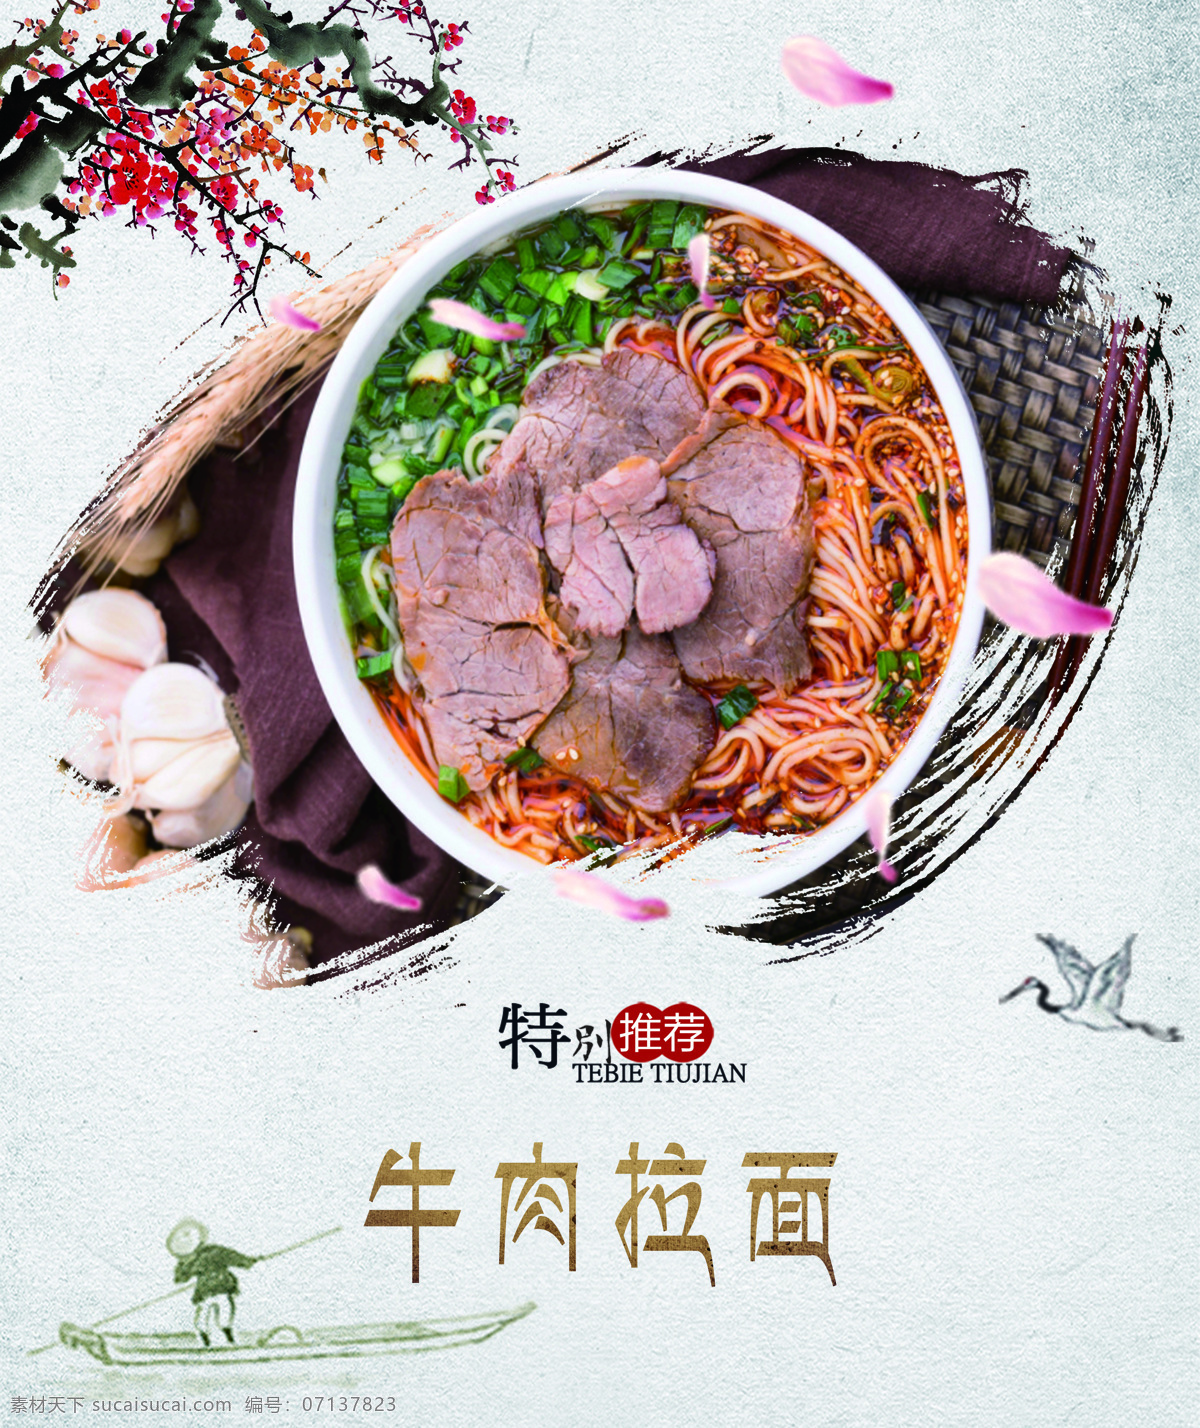 牛肉拉面 食堂灯箱 菜品 水墨风 中国风 室外广告设计